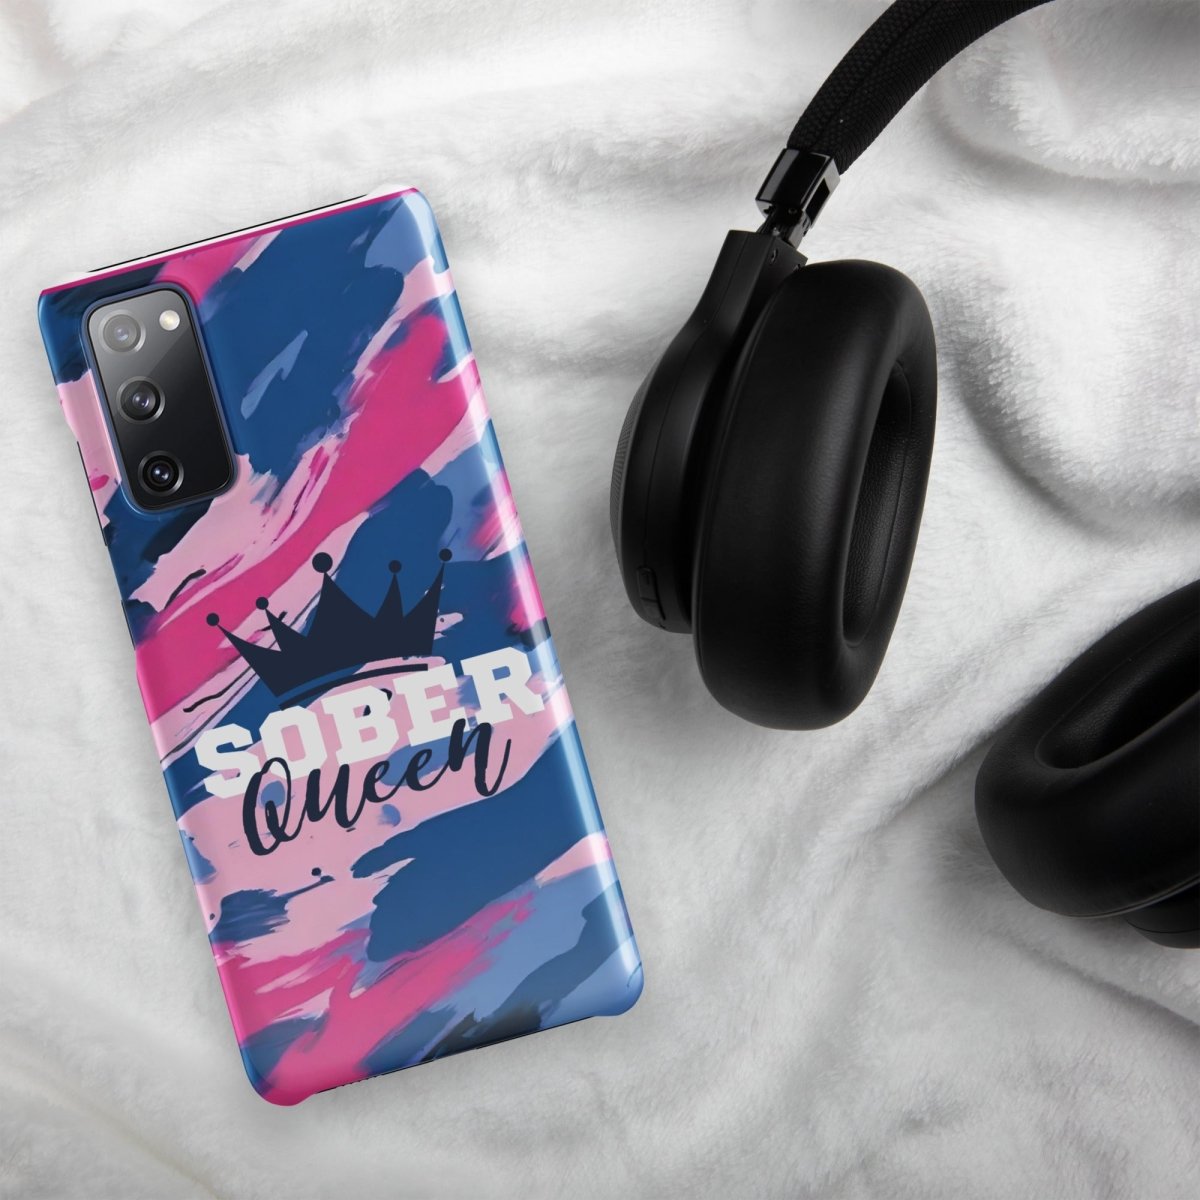 Sober Queen Samsung? Snap Case - Sleek Protection, Royal Inspiration